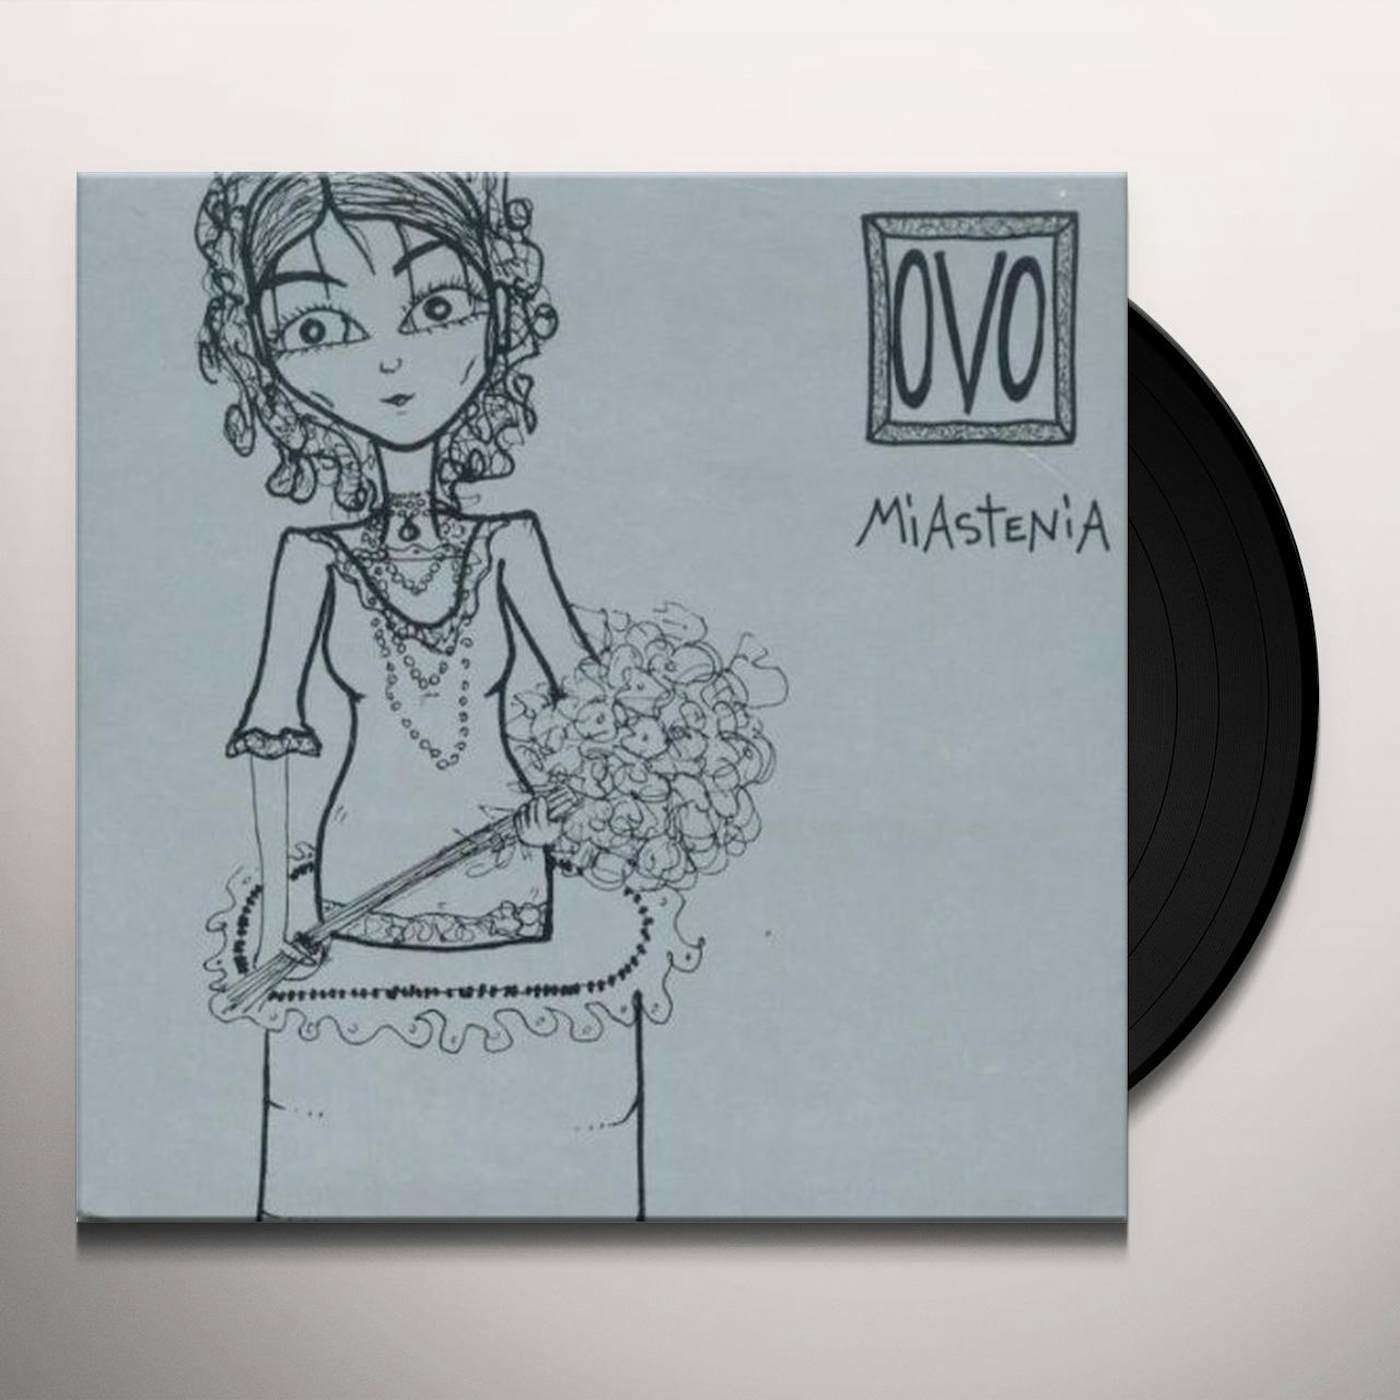 OvO MIASTENIA Vinyl Record - Limited Edition